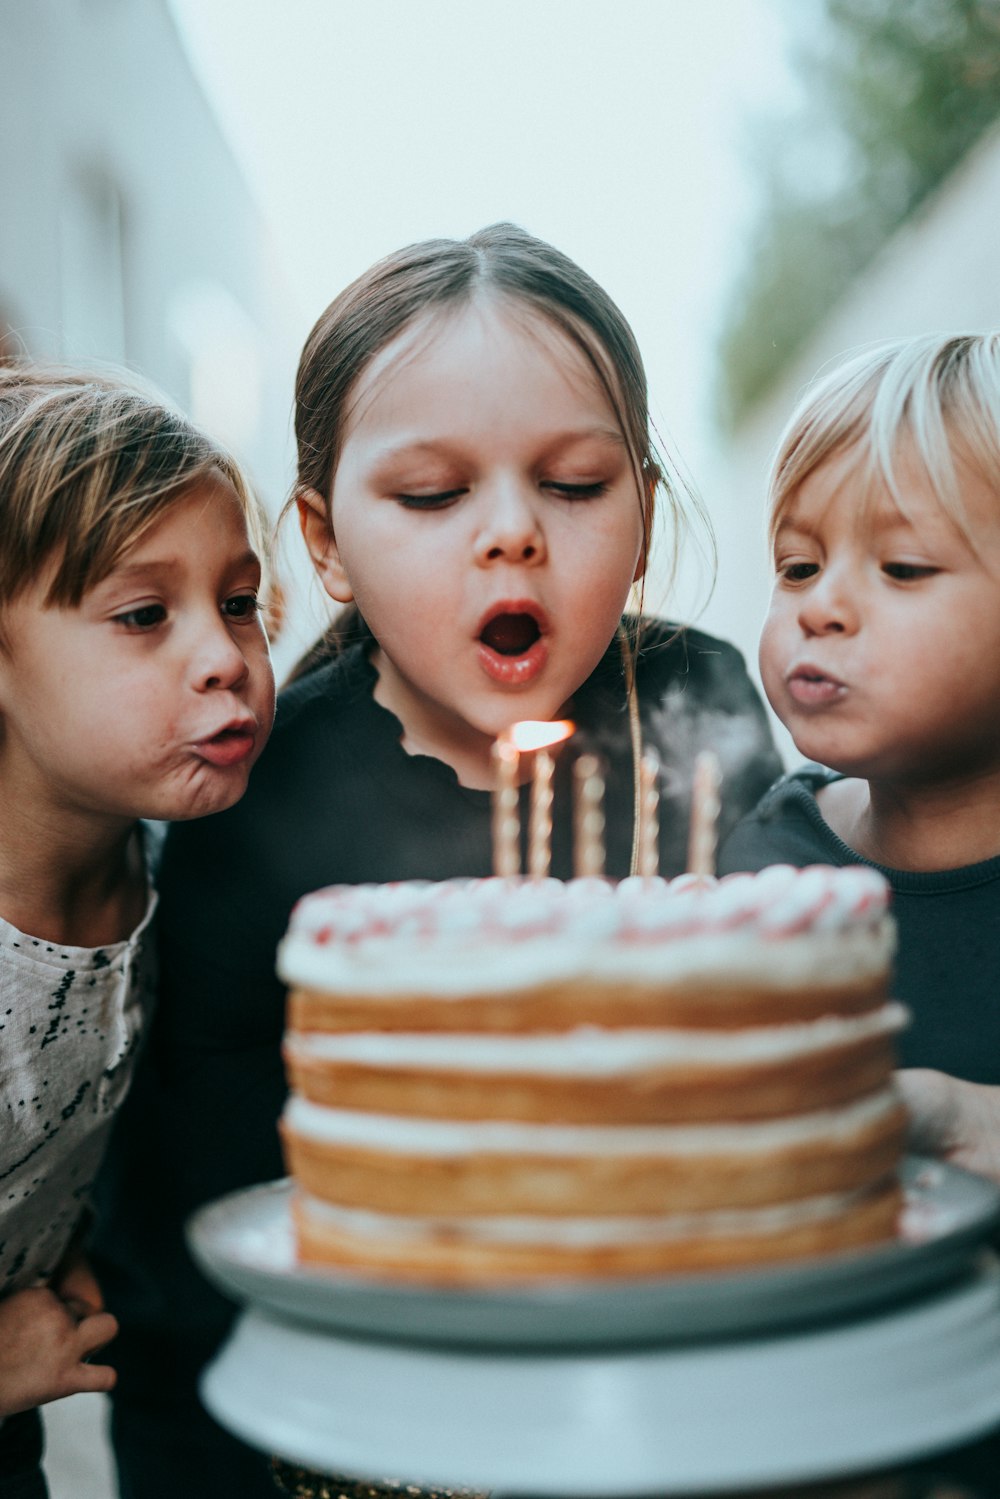 Se apagan las velas en el pastel de cumpleaños